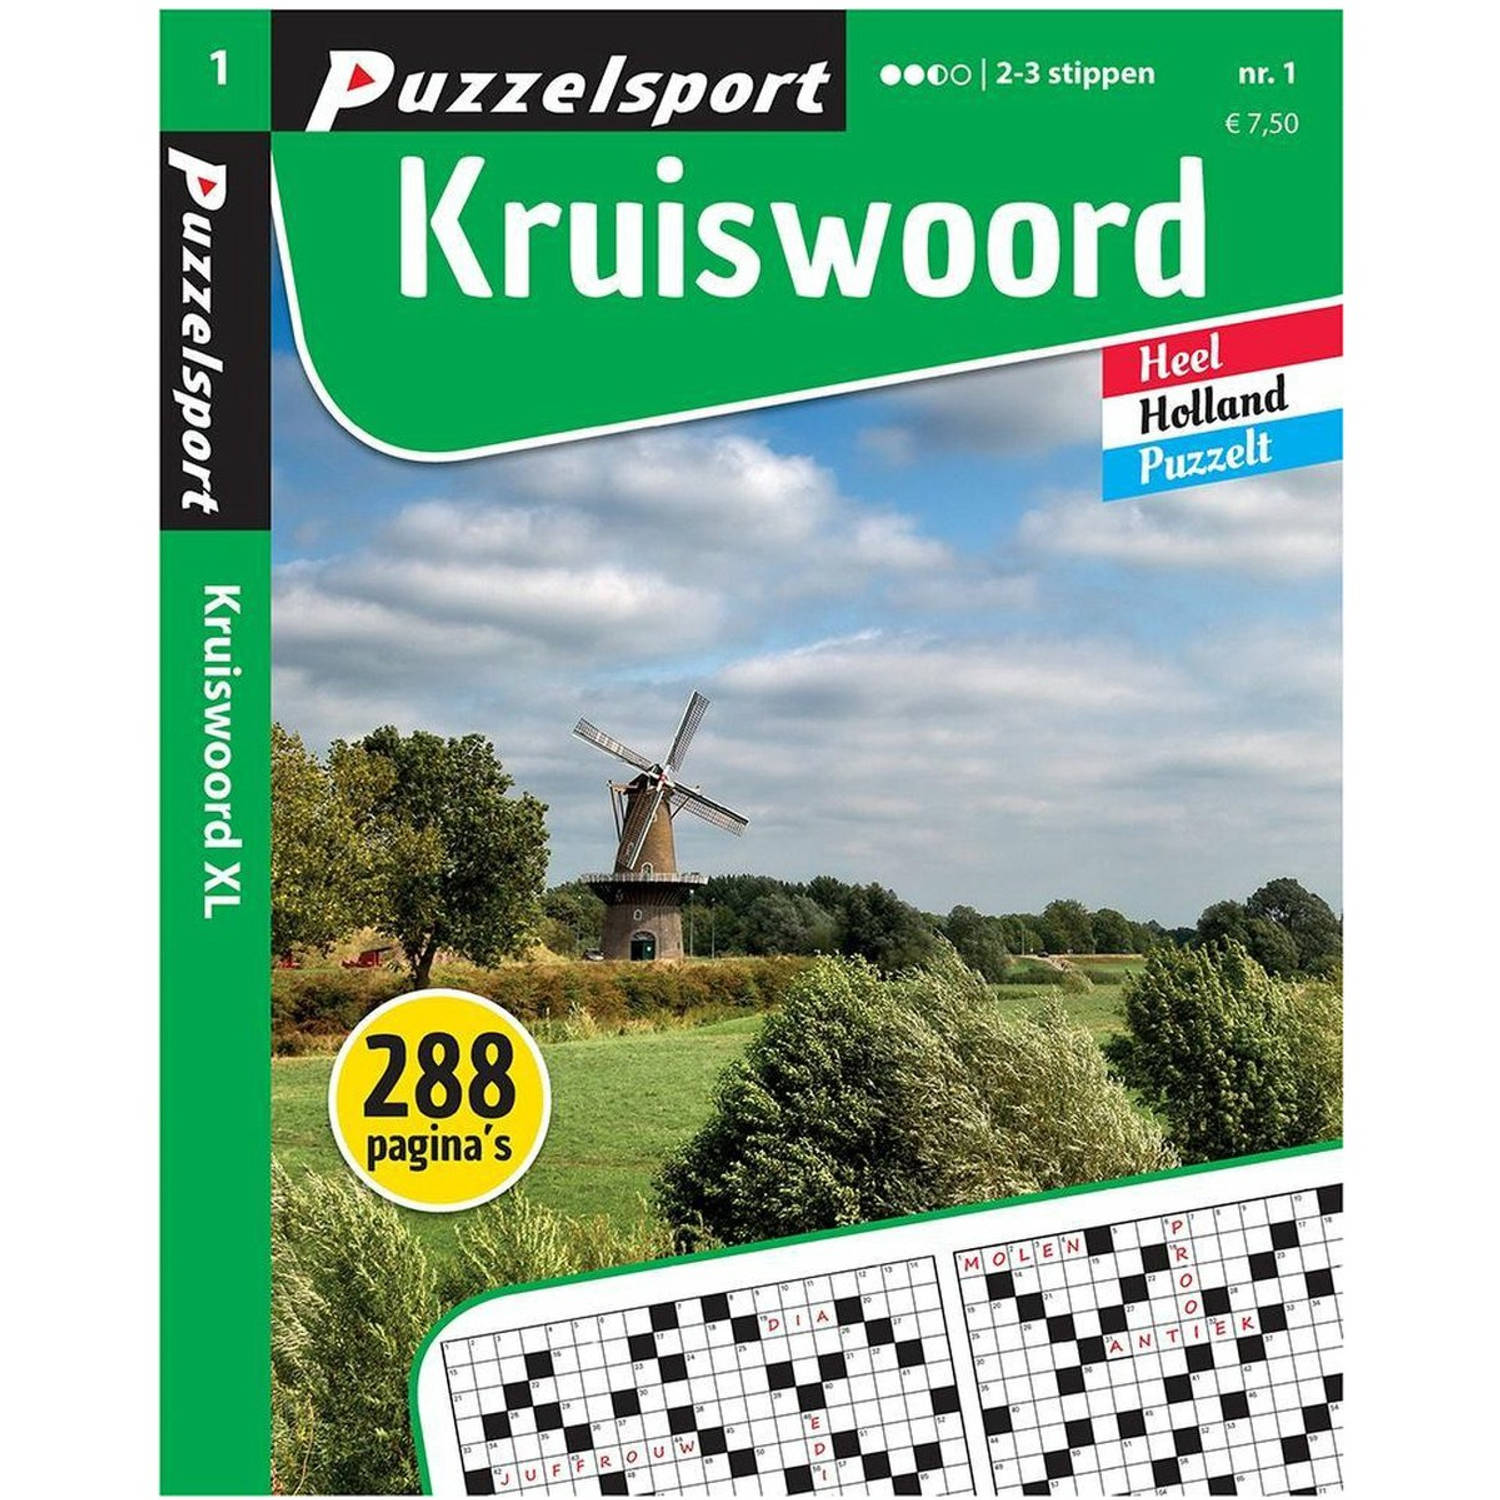 Puzzelsport Puzzelboek Kruiswoord 2-3* 288 pagina's Nr.1